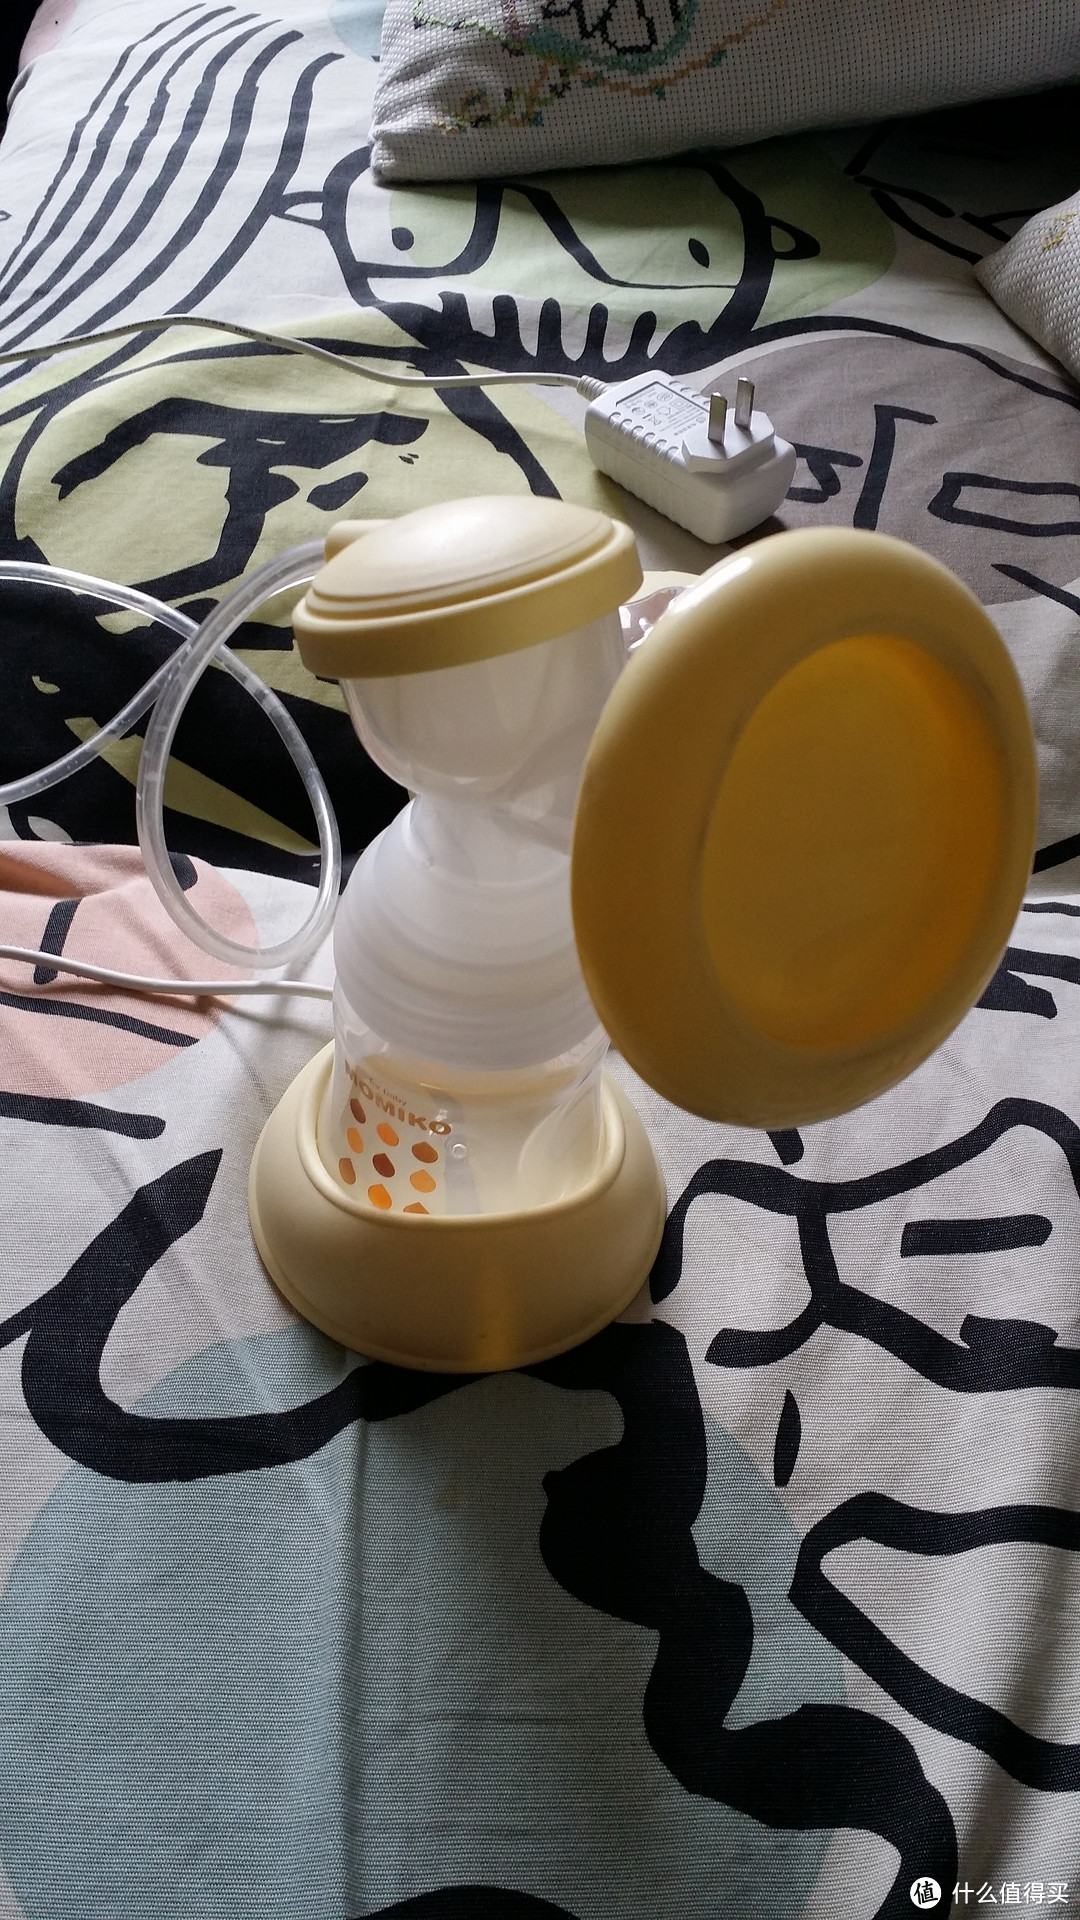 新安怡新安怡手动吸奶器使用视频教程，让你轻松掌握吸奶技巧 新安怡手动吸奶器的视频图1